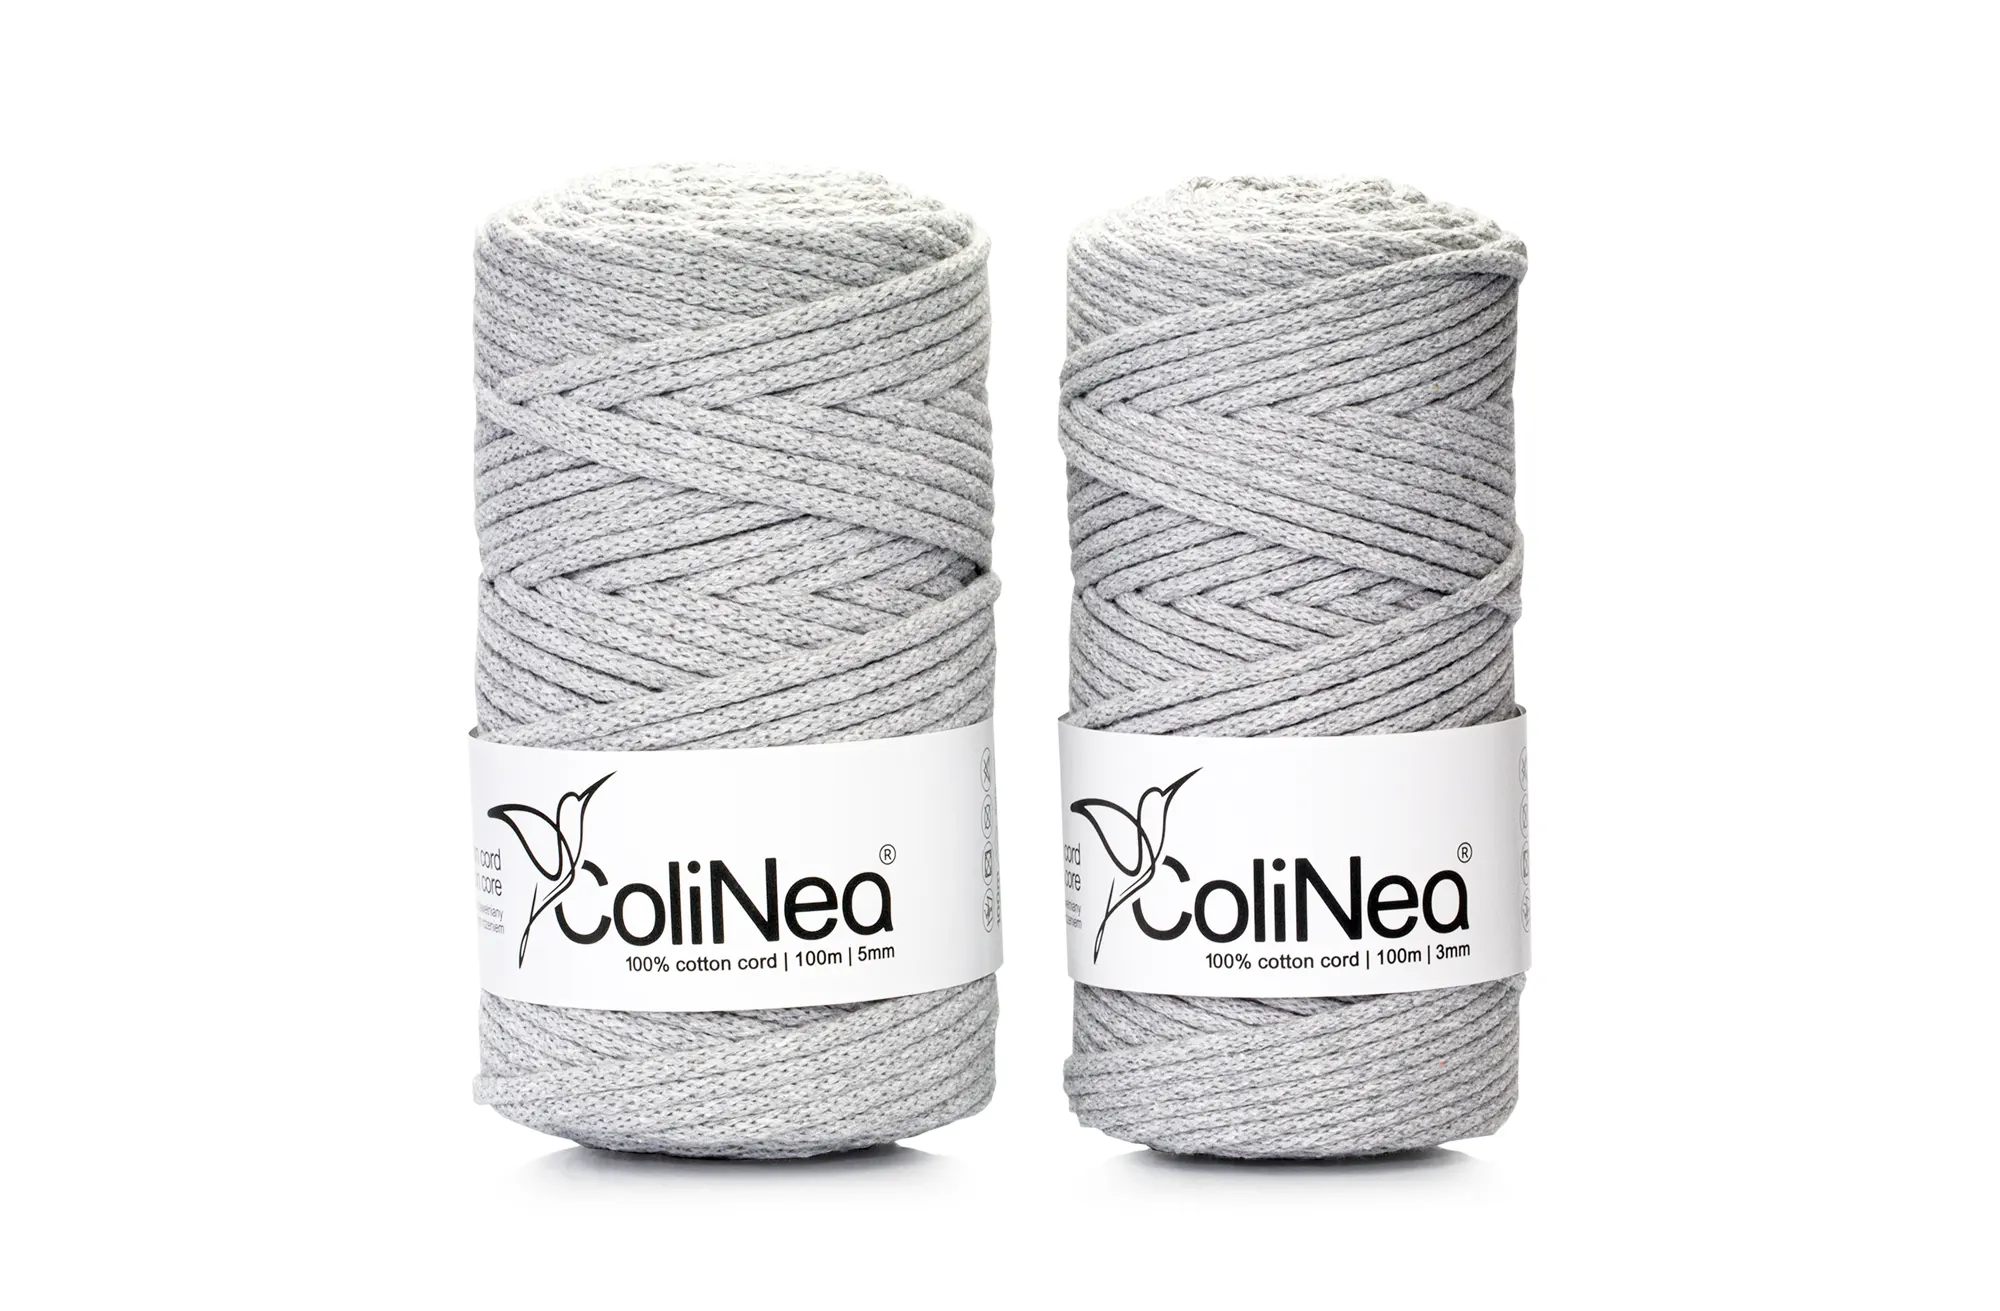 Was & Colinea | Hersteller von Baumwollkordeln